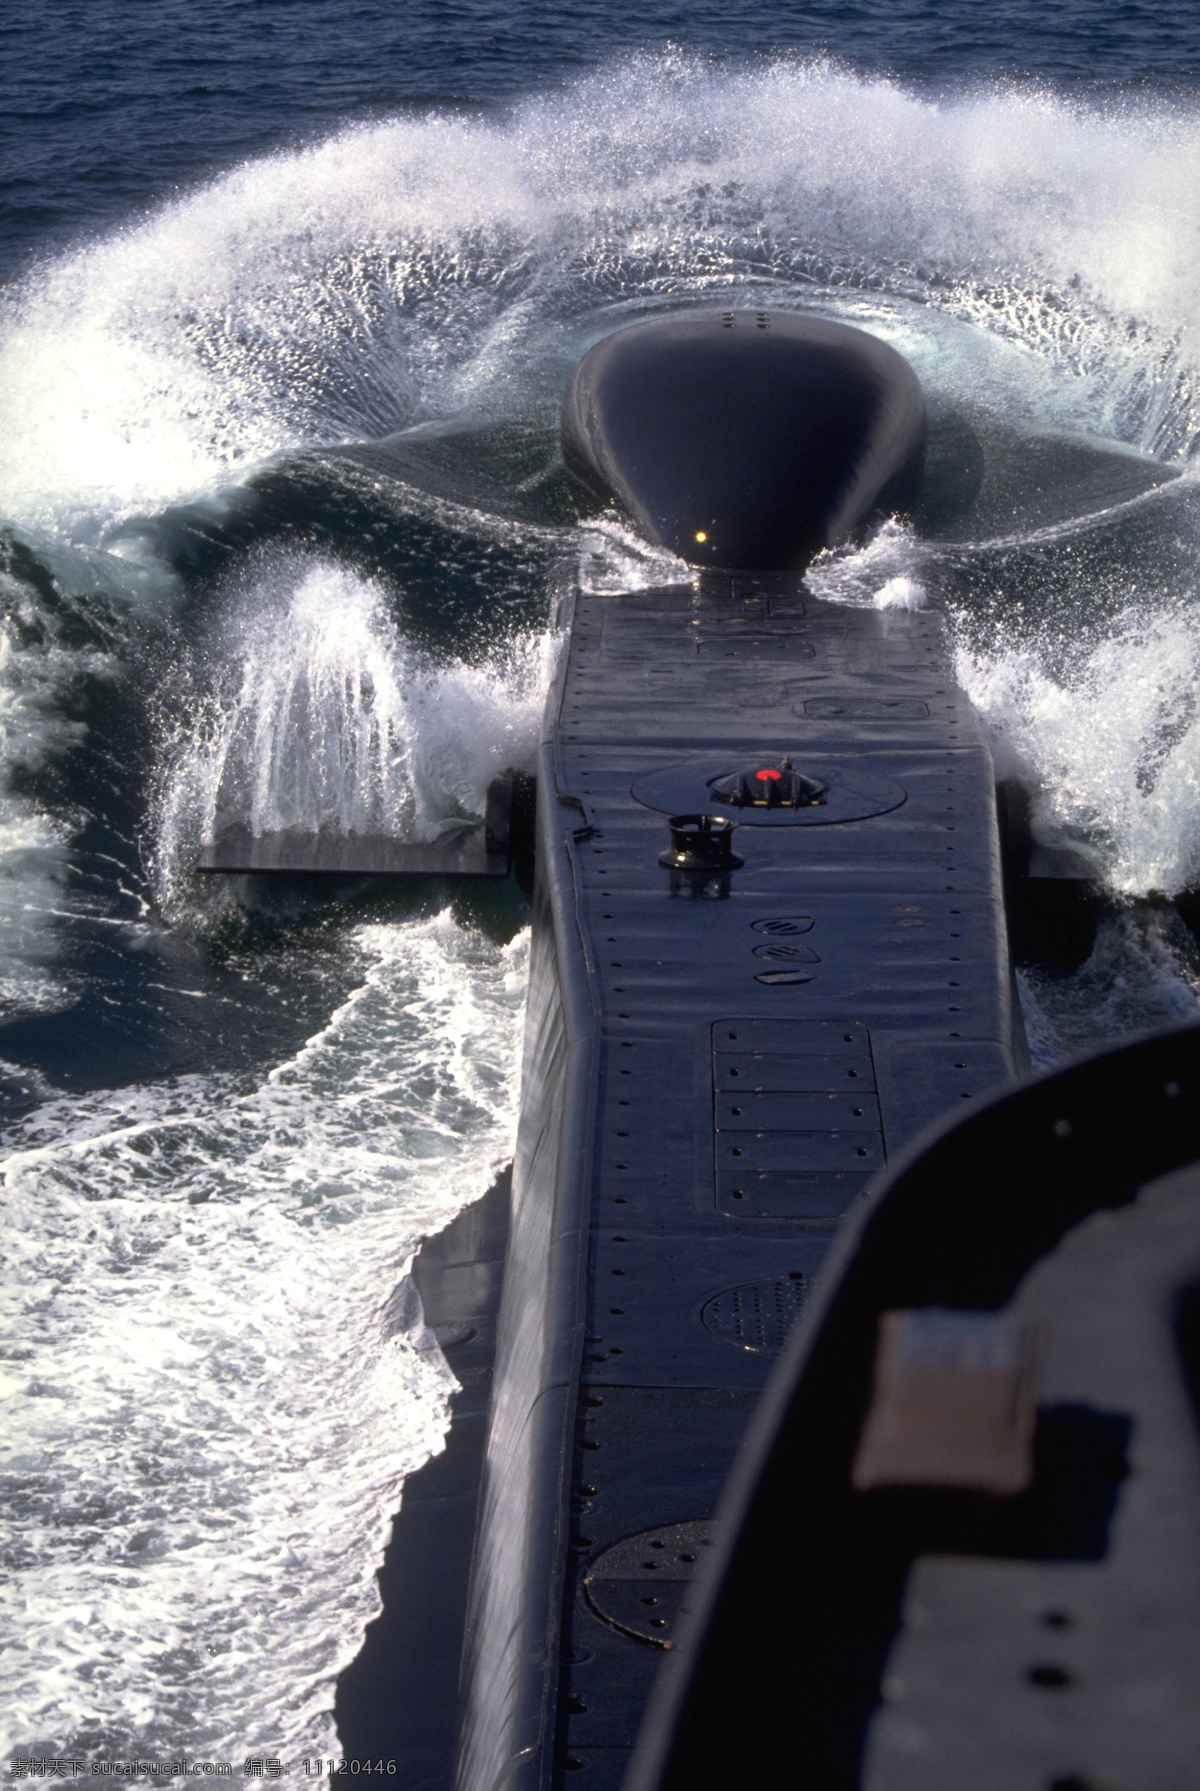 潜艇图片素材 科学研究 潜艇 核潜艇 军事 科技图片 现代科技